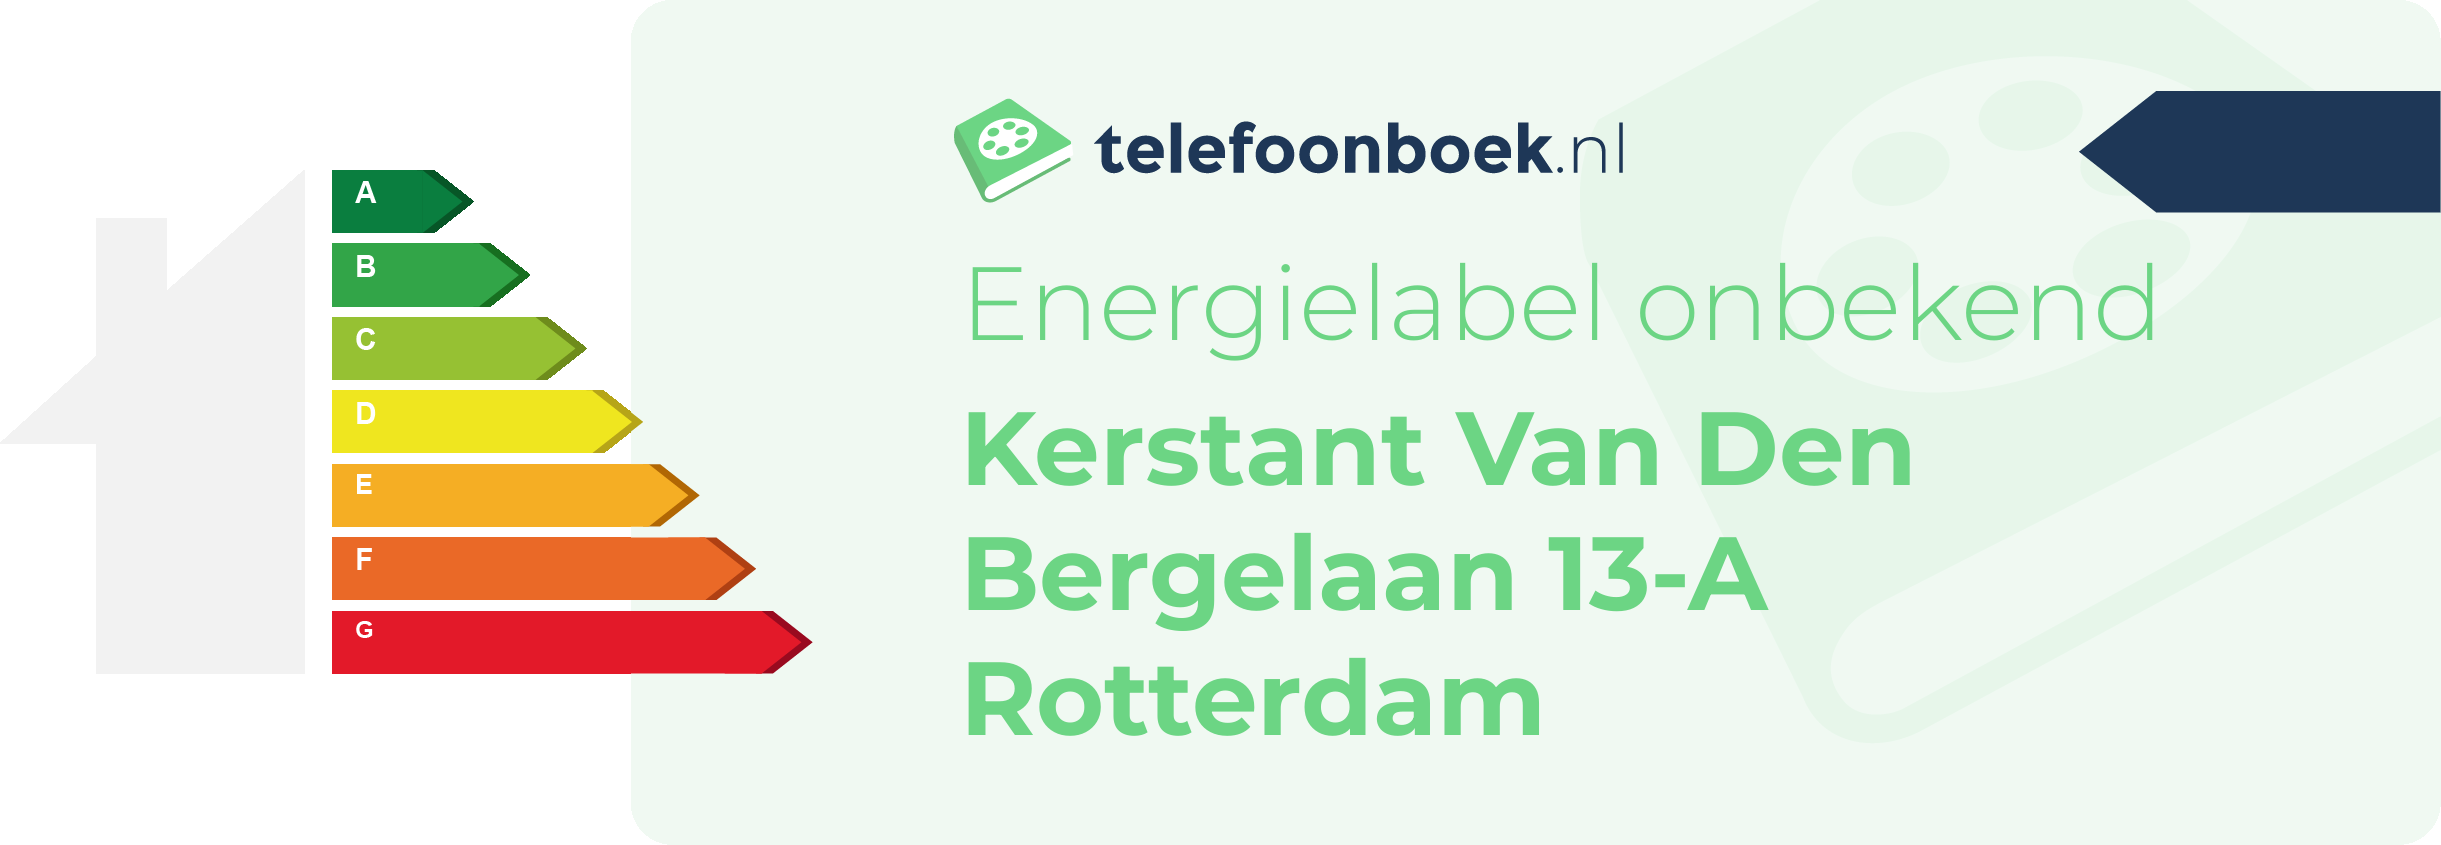 Energielabel Kerstant Van Den Bergelaan 13-A Rotterdam